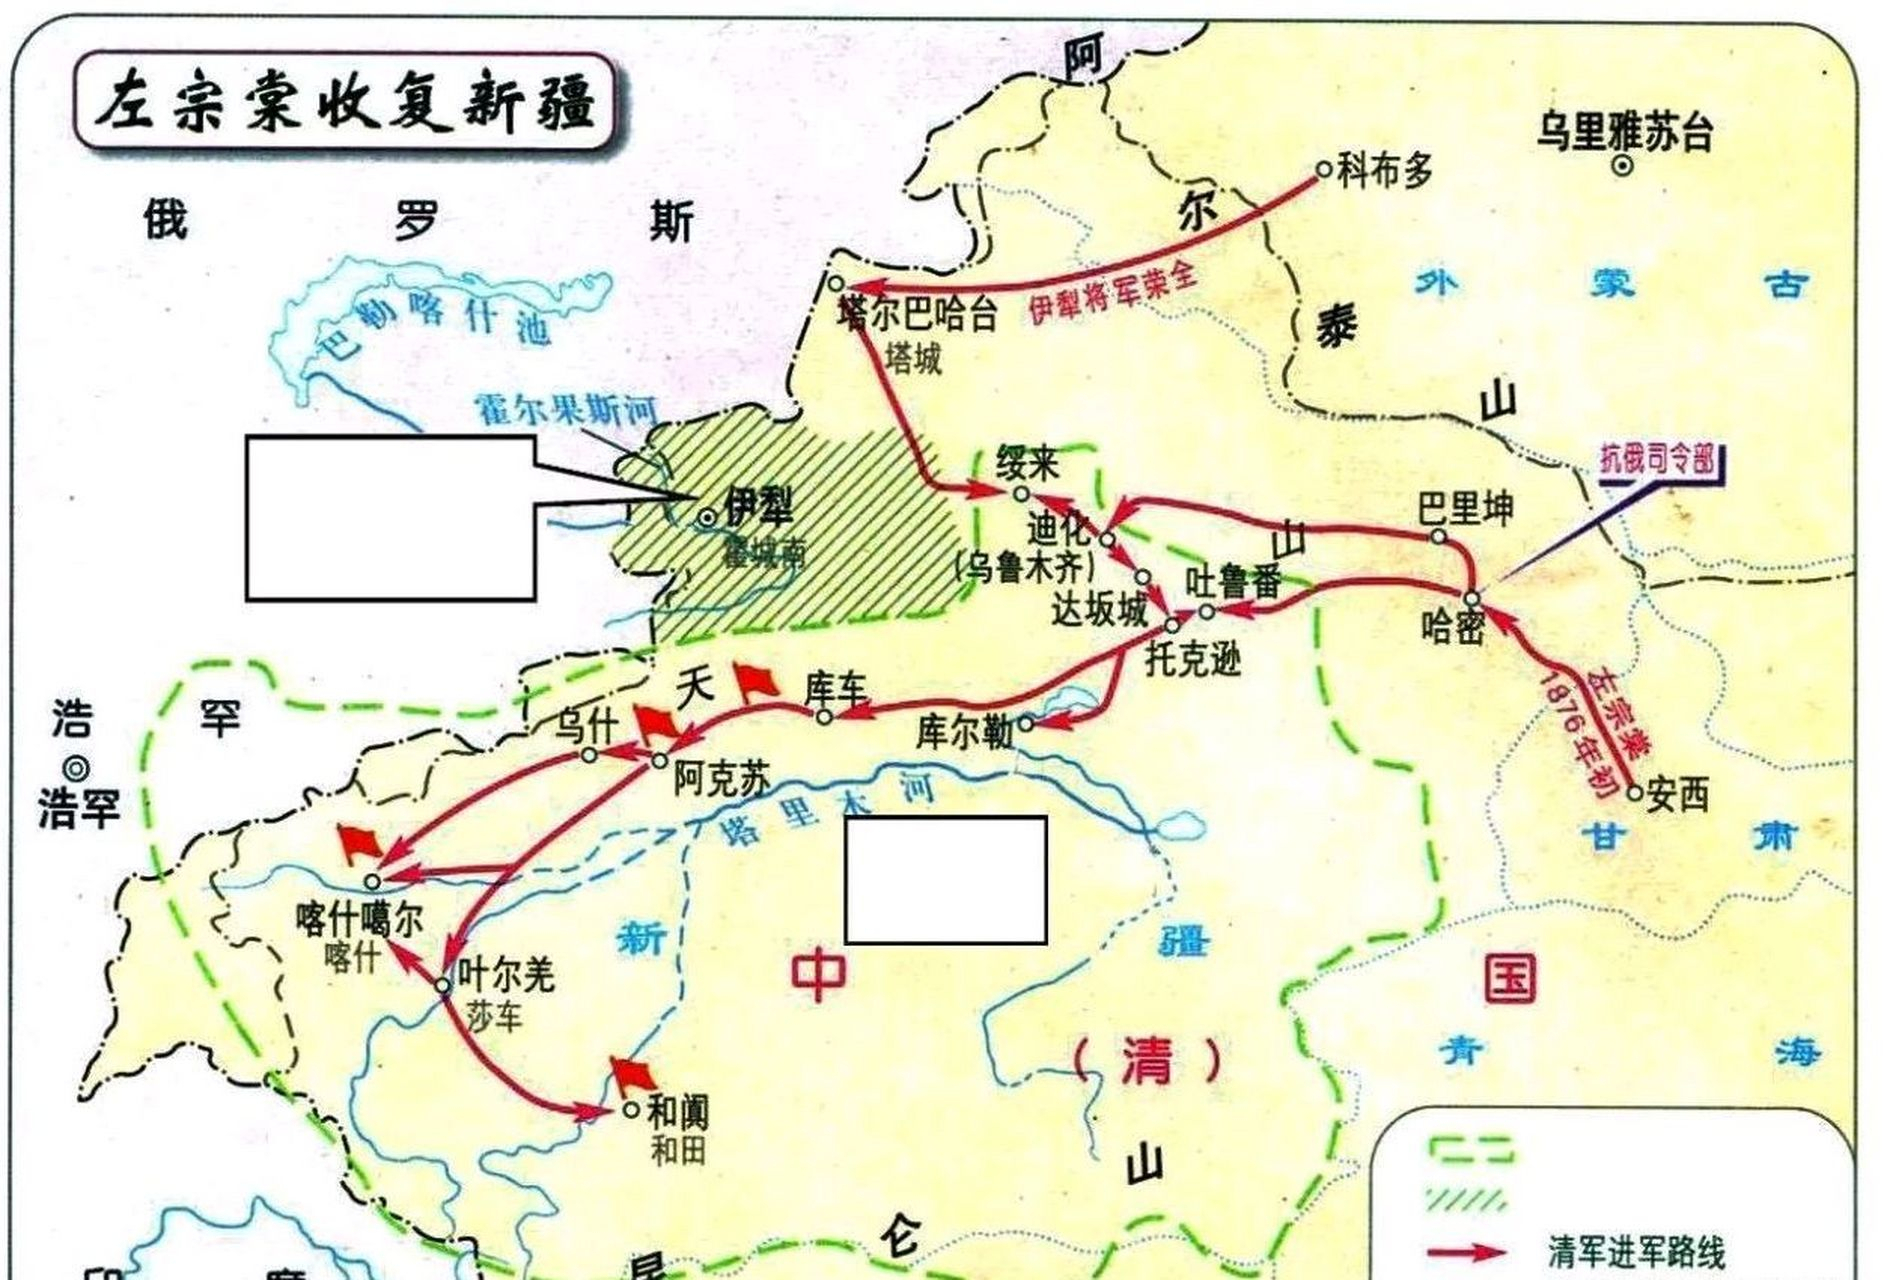 新疆有古丝绸之路多个重要通道,唐朝以前当地居民几乎多信佛教,摩尼教